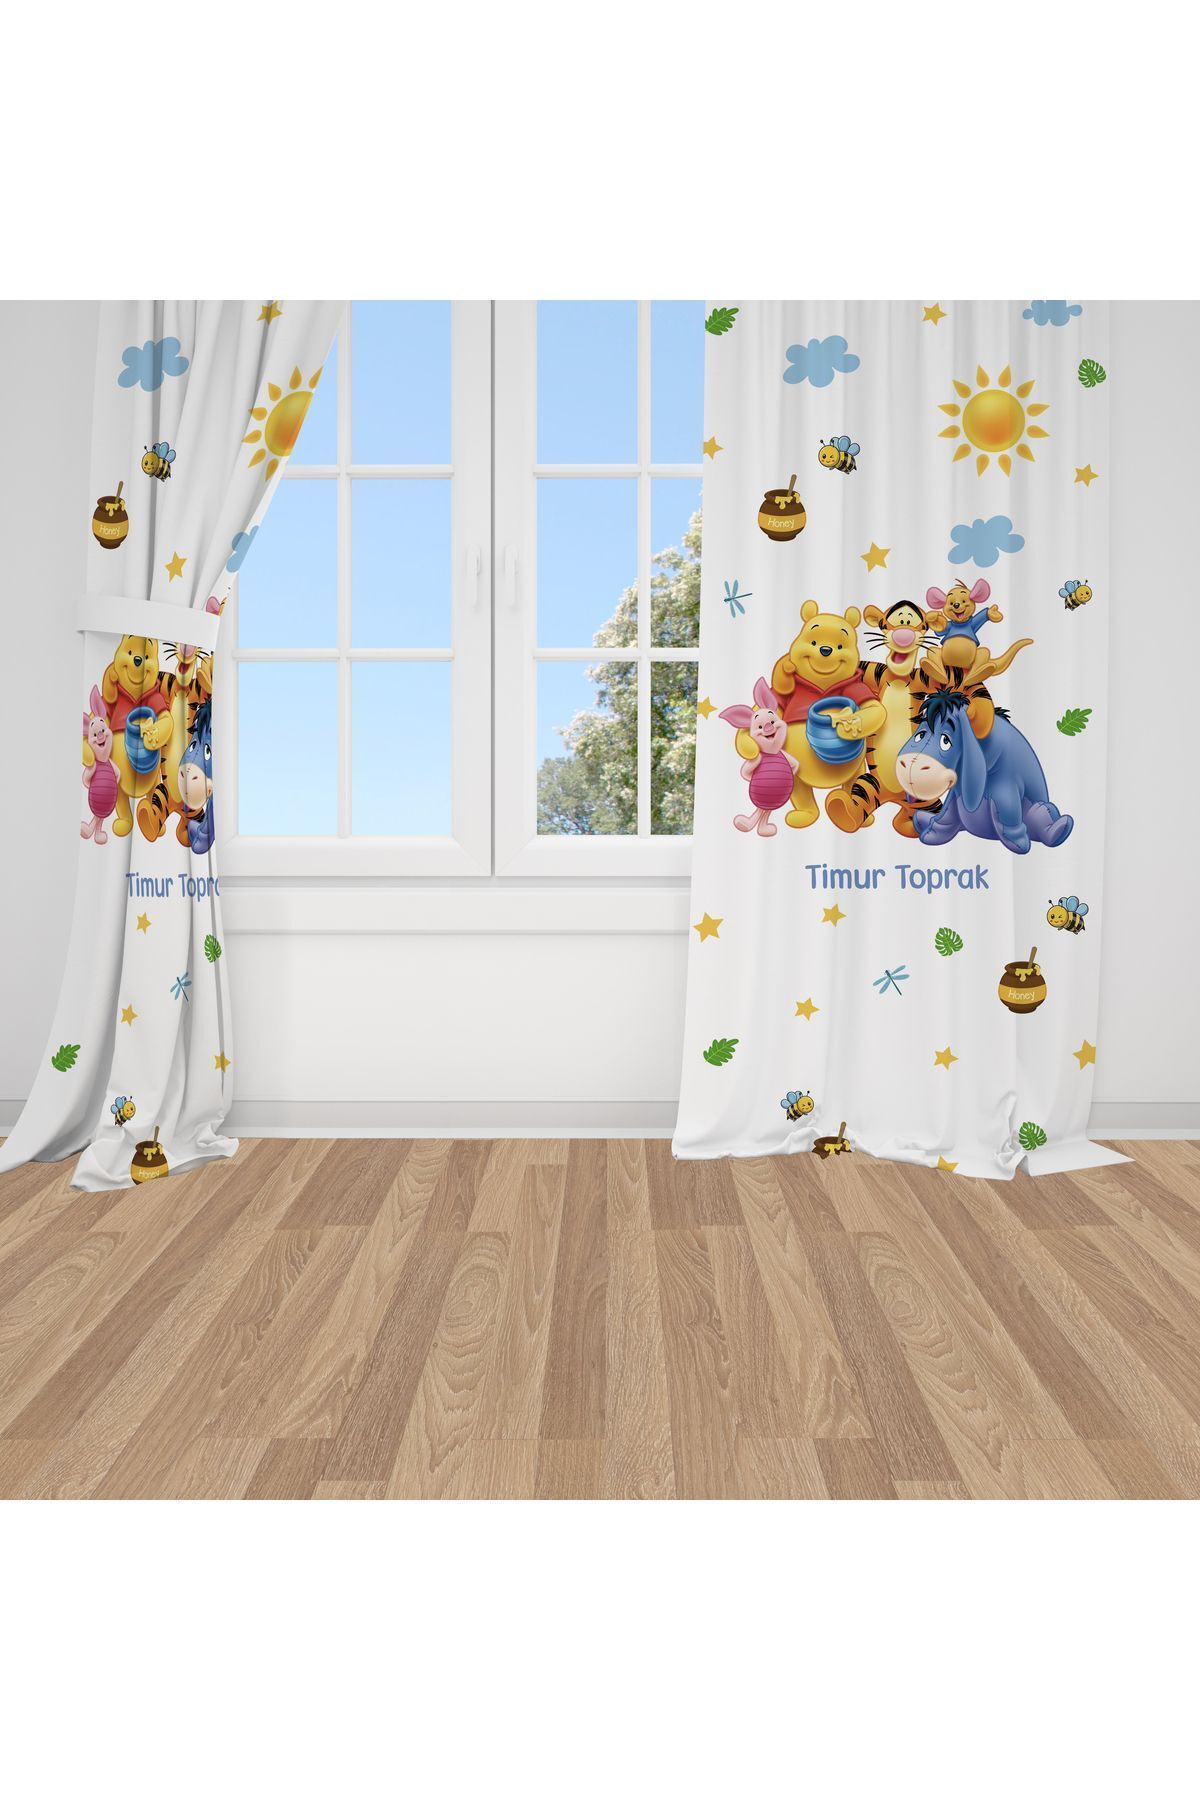 Bebemotto Winnie The Pooh 3, Beyaz, Sarı, Mavi Ithal Kumaş, Çocuk Odası, Bebek Odası Fon Perde - 1 Kanat